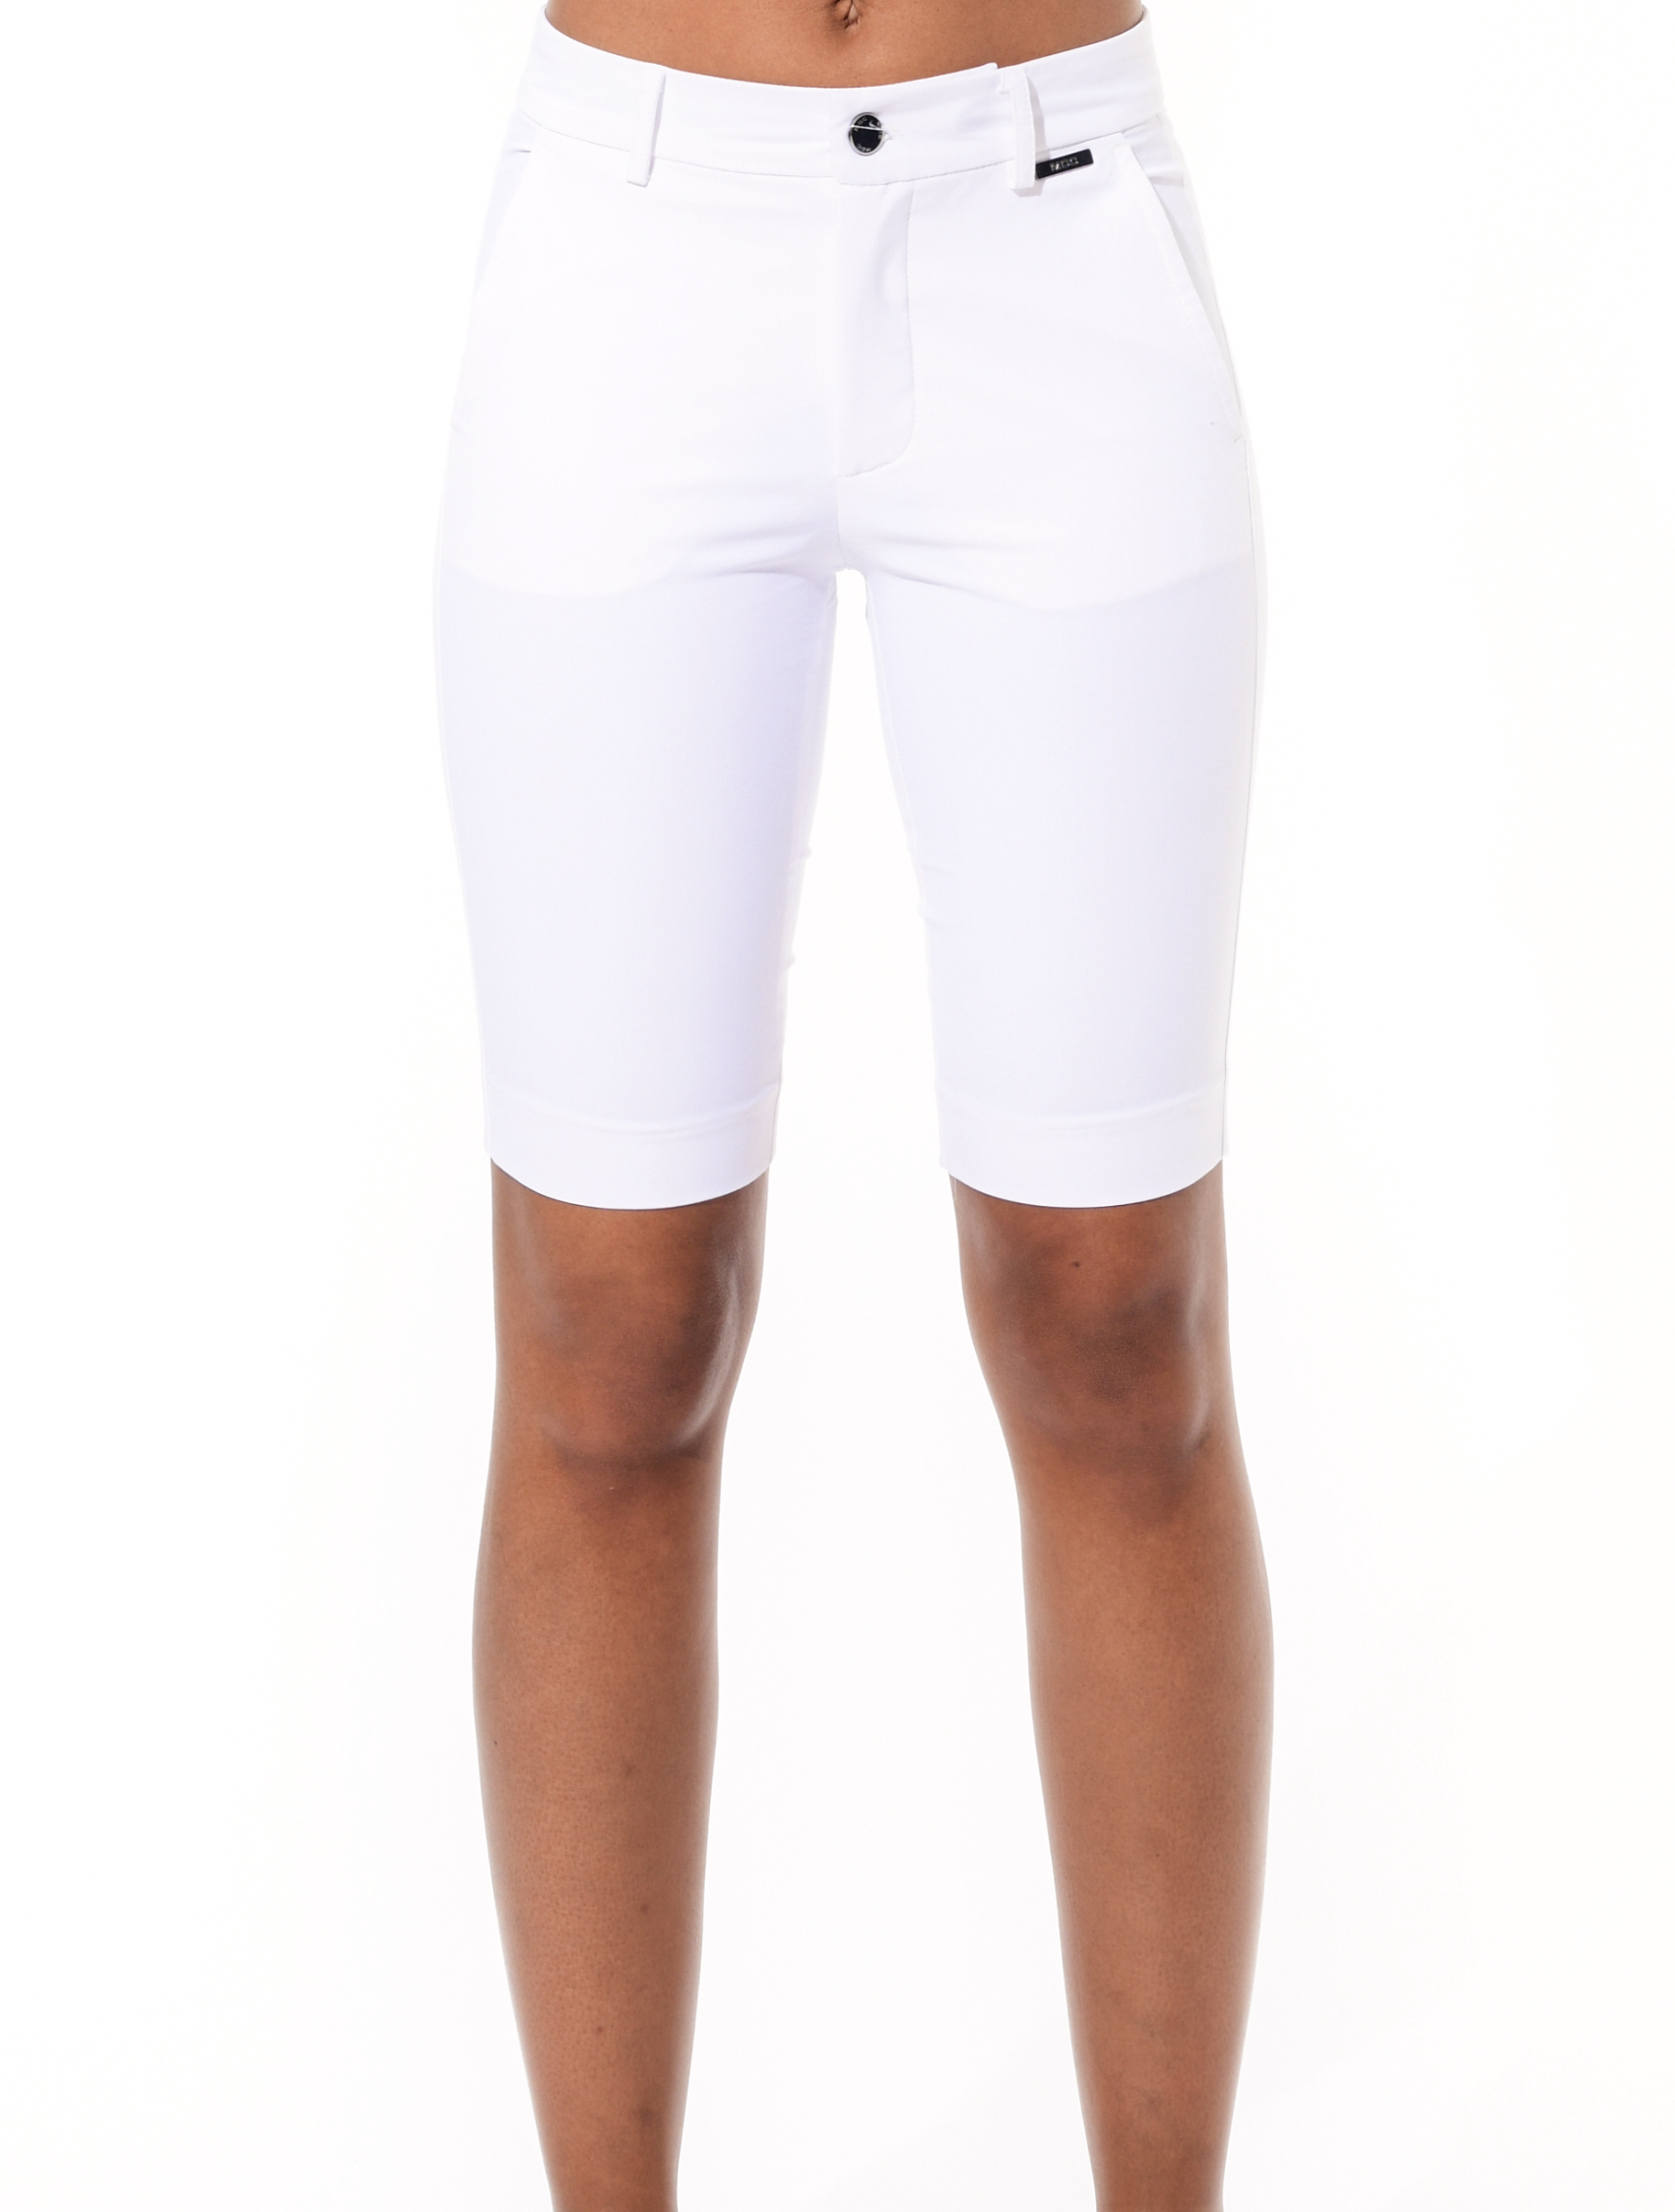 4way stretch golf shorts white 